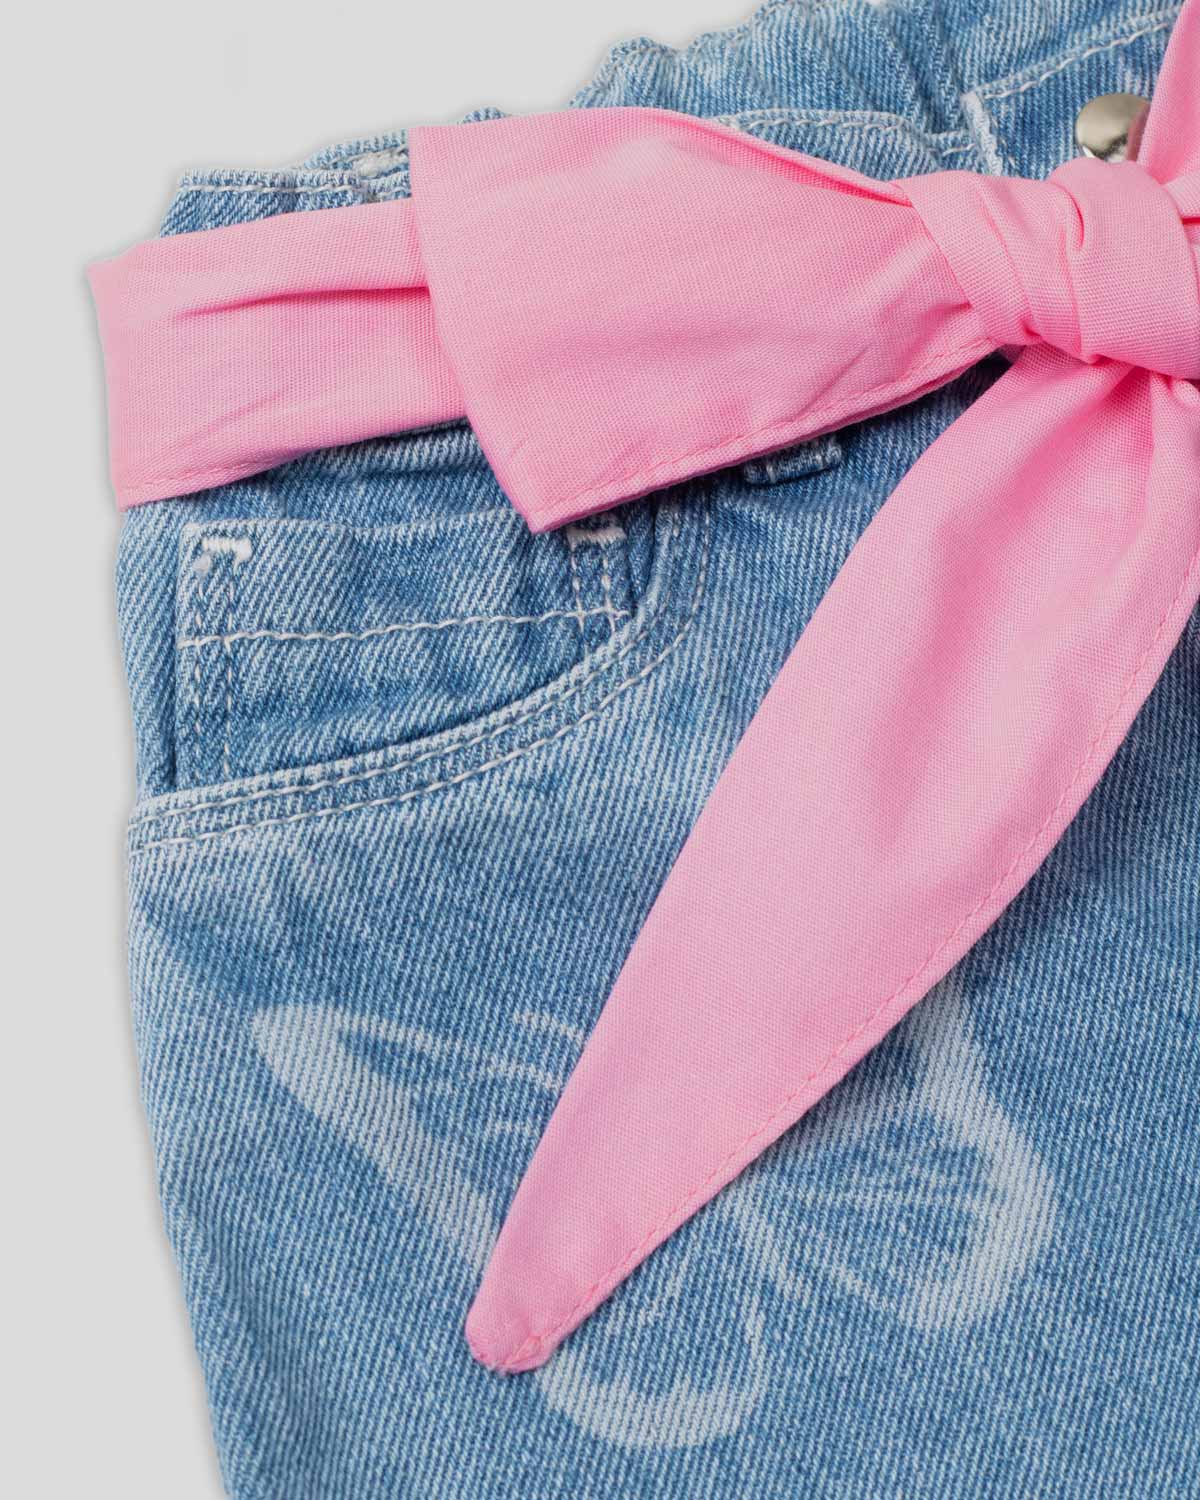 Short denim con detalle de mariposa y cinturón rosa para niña